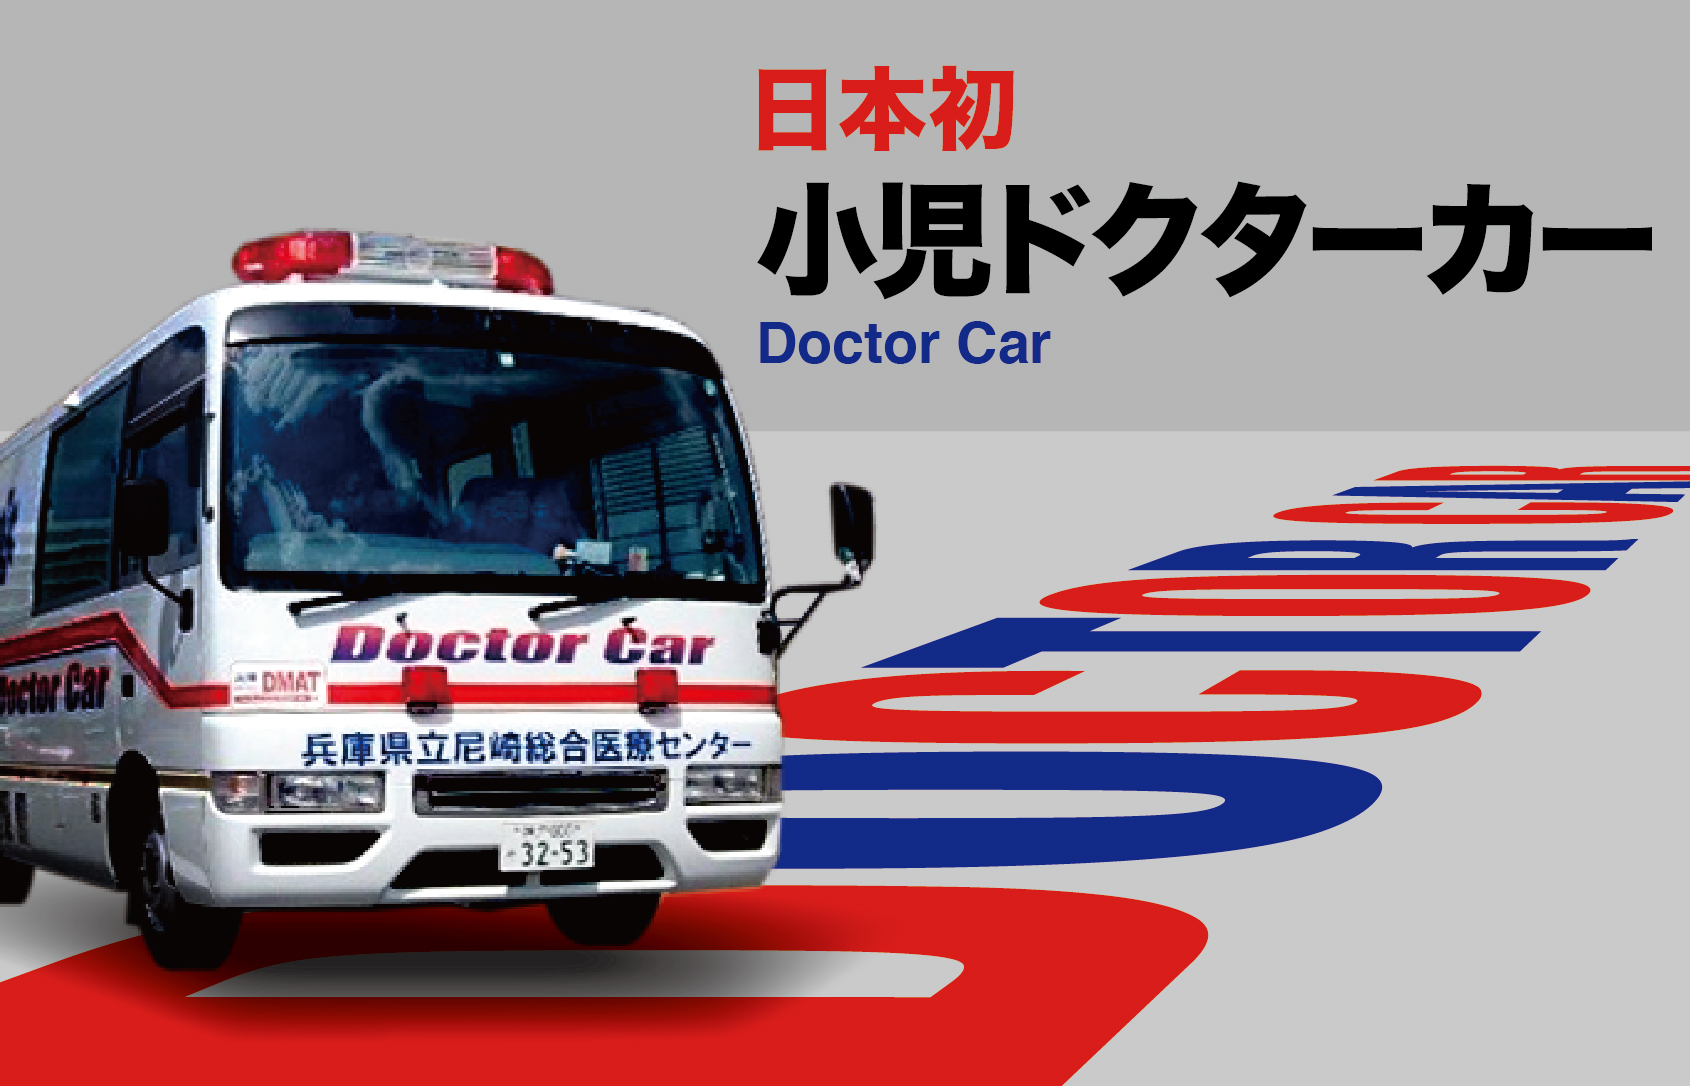 兵庫県立尼崎総合医療センター「小児ドクターカー」に関する特集記事です